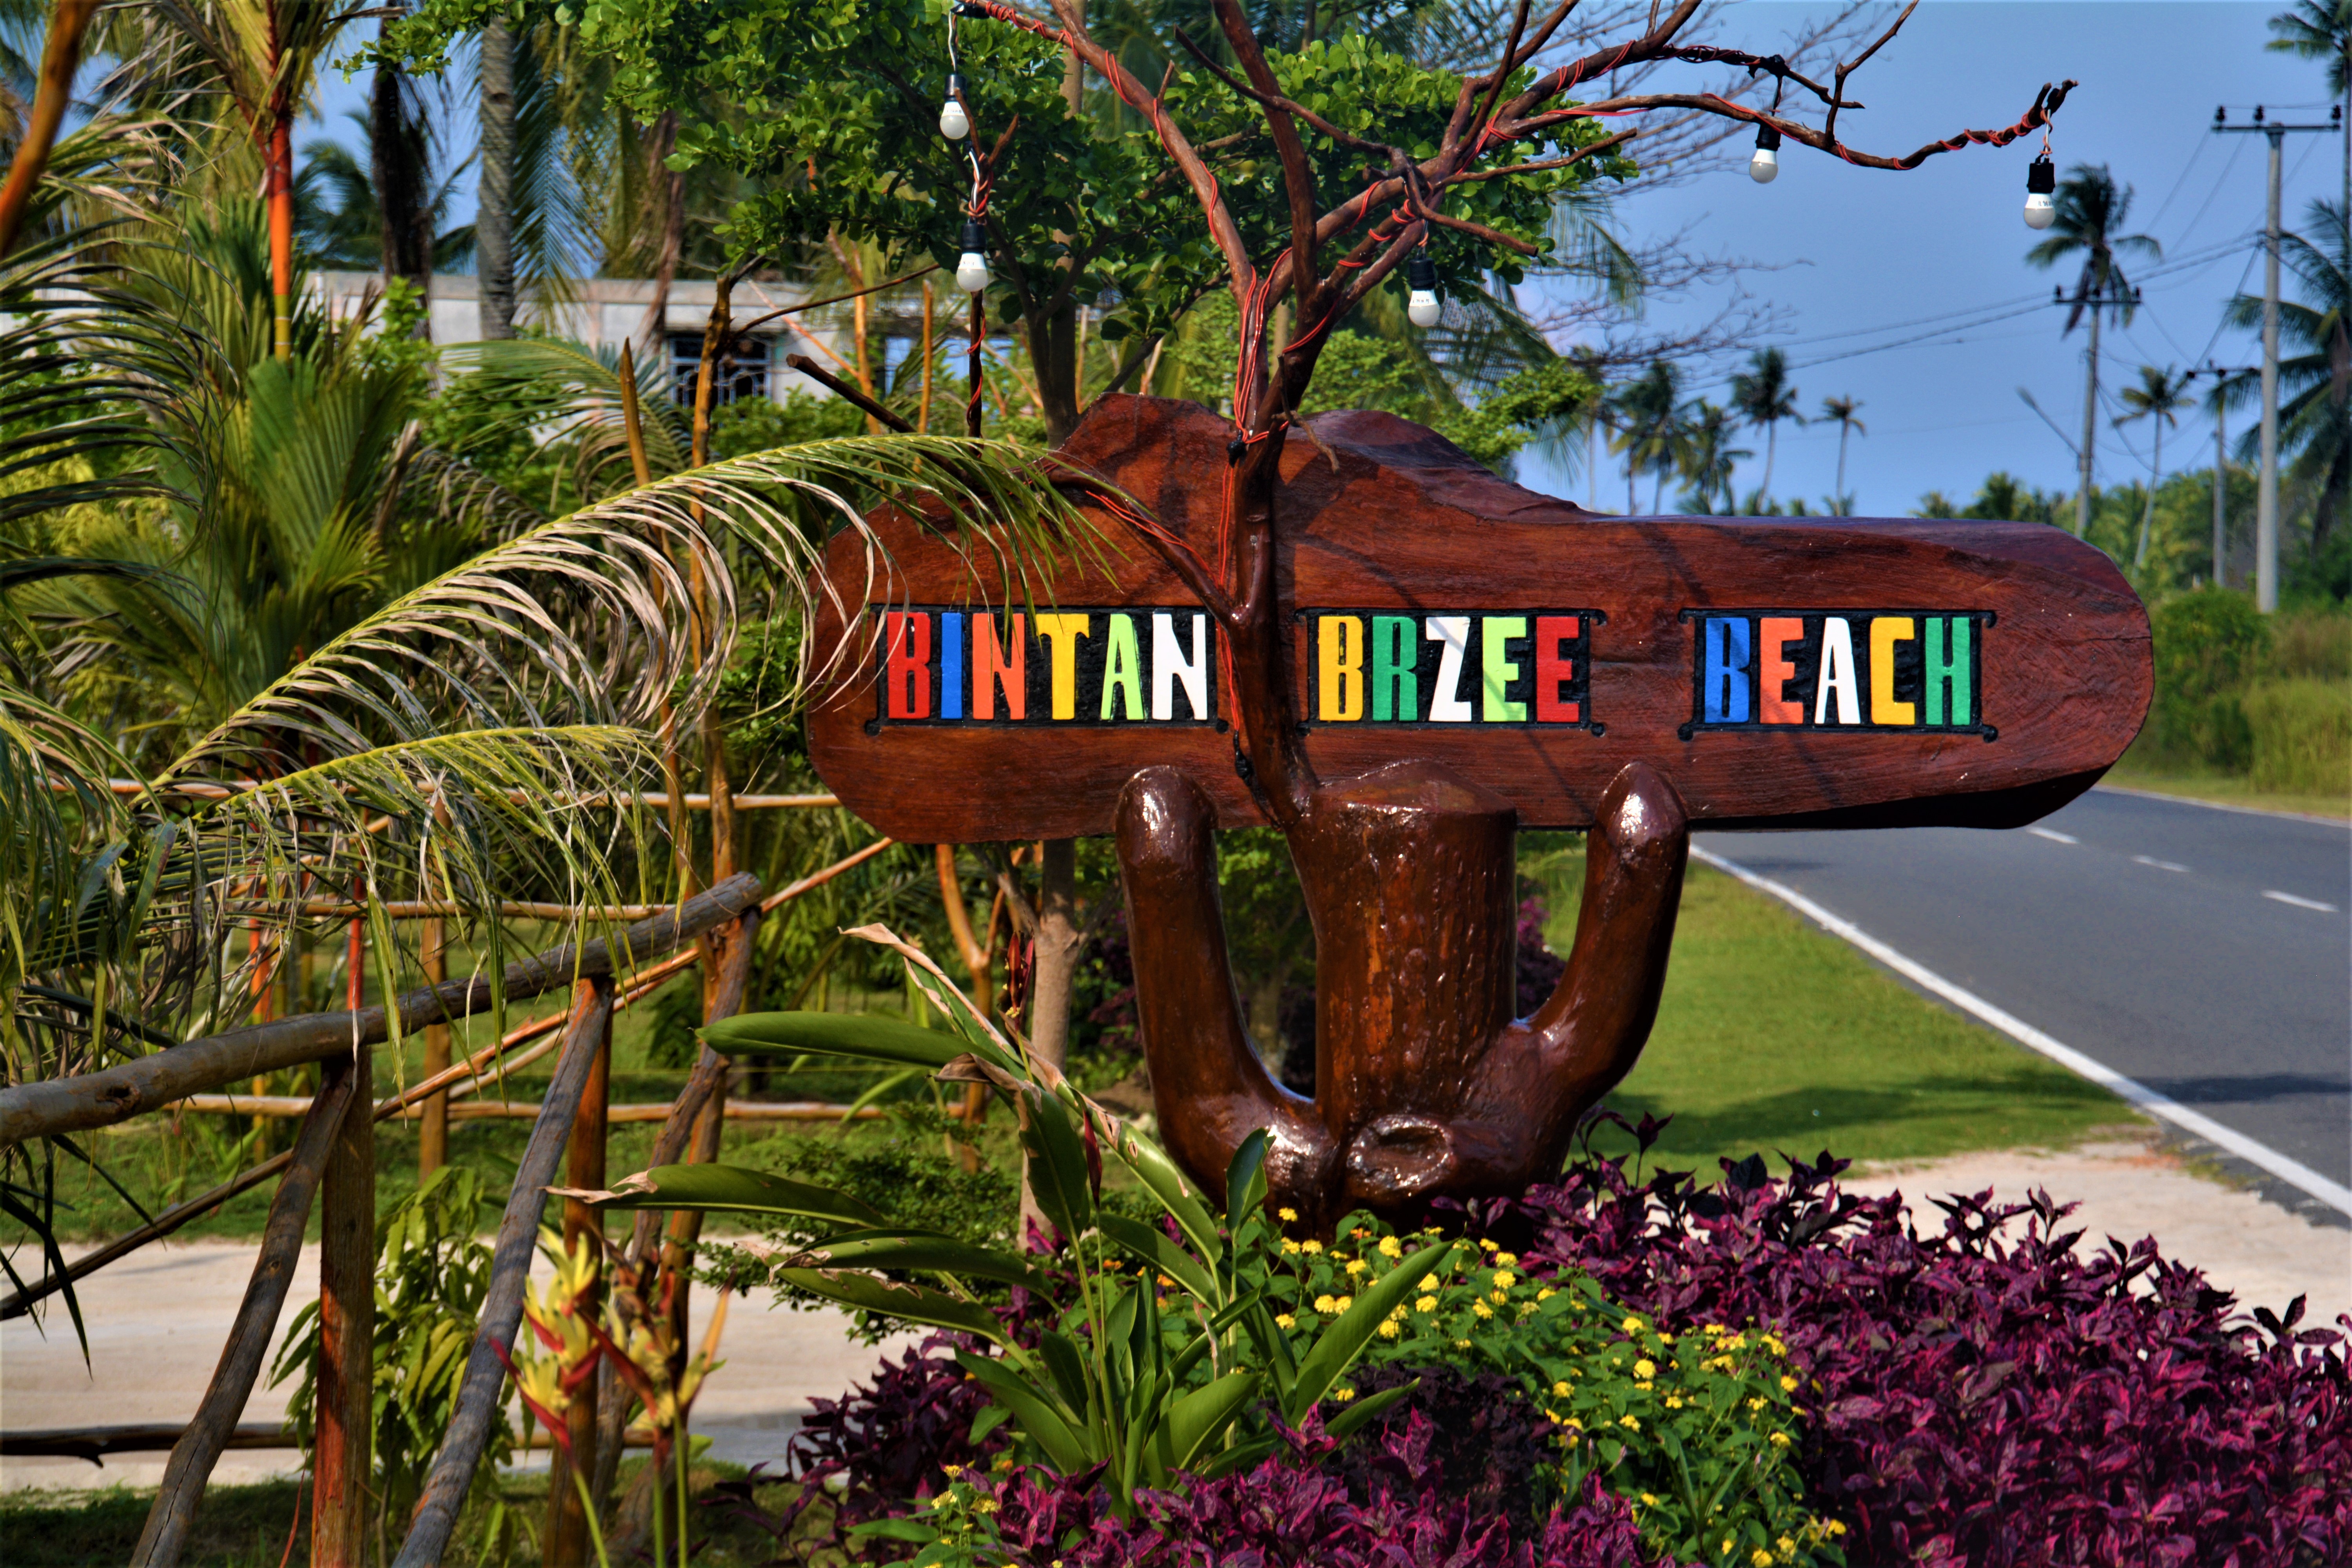 Bintan Brzee Beach, Bintan Island